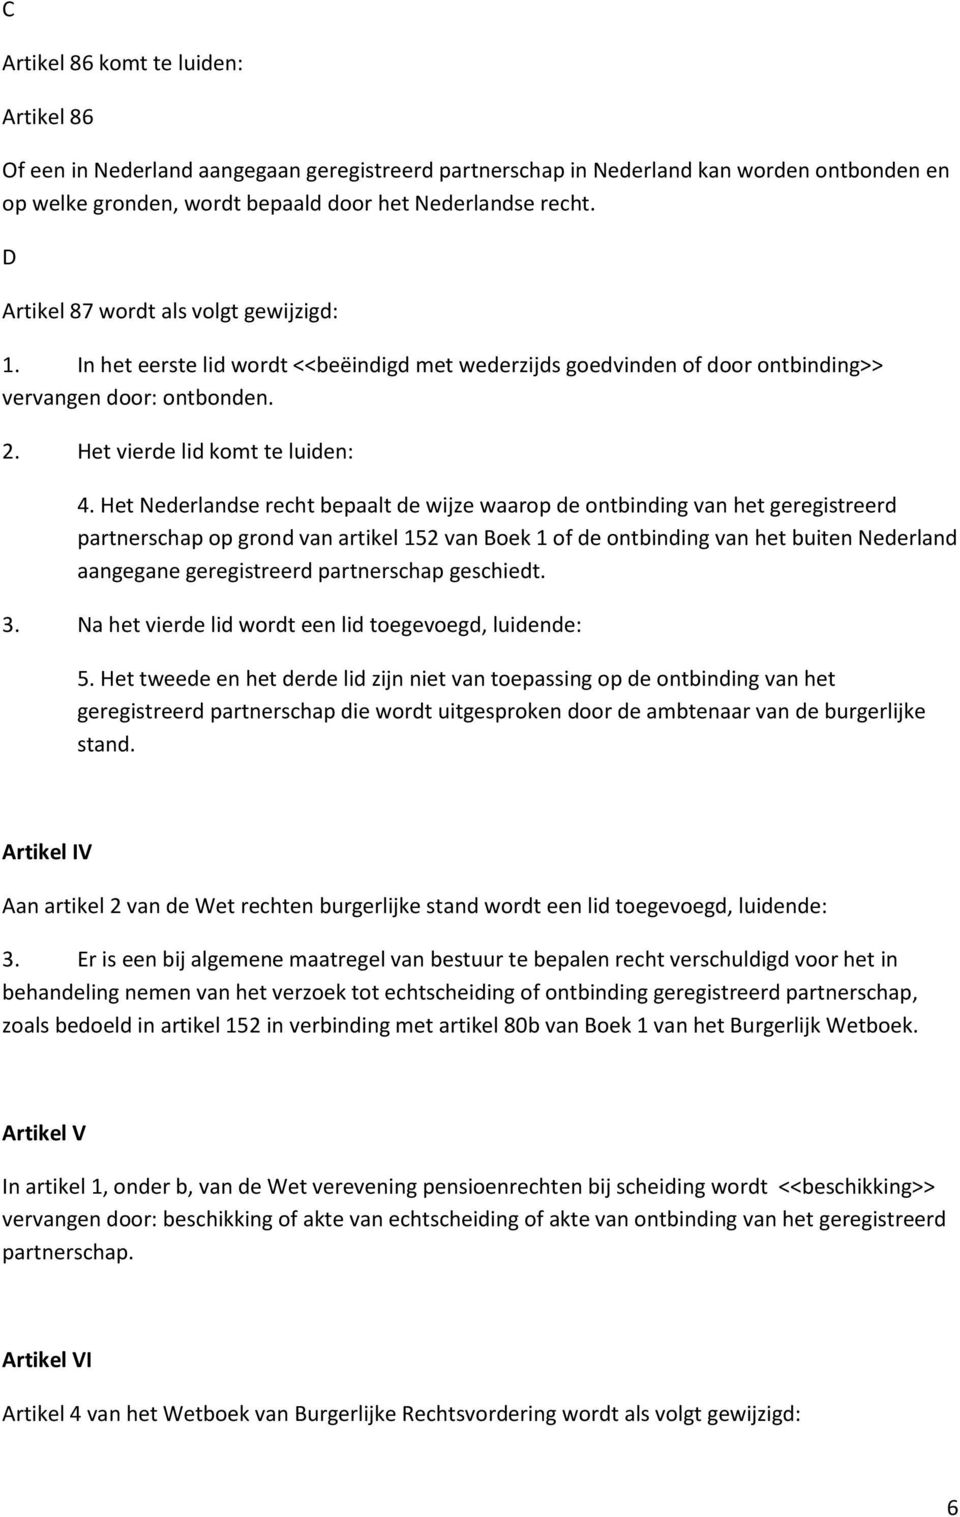 Het Nederlandse recht bepaalt de wijze waarop de ontbinding van het geregistreerd partnerschap op grond van artikel 152 van Boek 1 of de ontbinding van het buiten Nederland aangegane geregistreerd